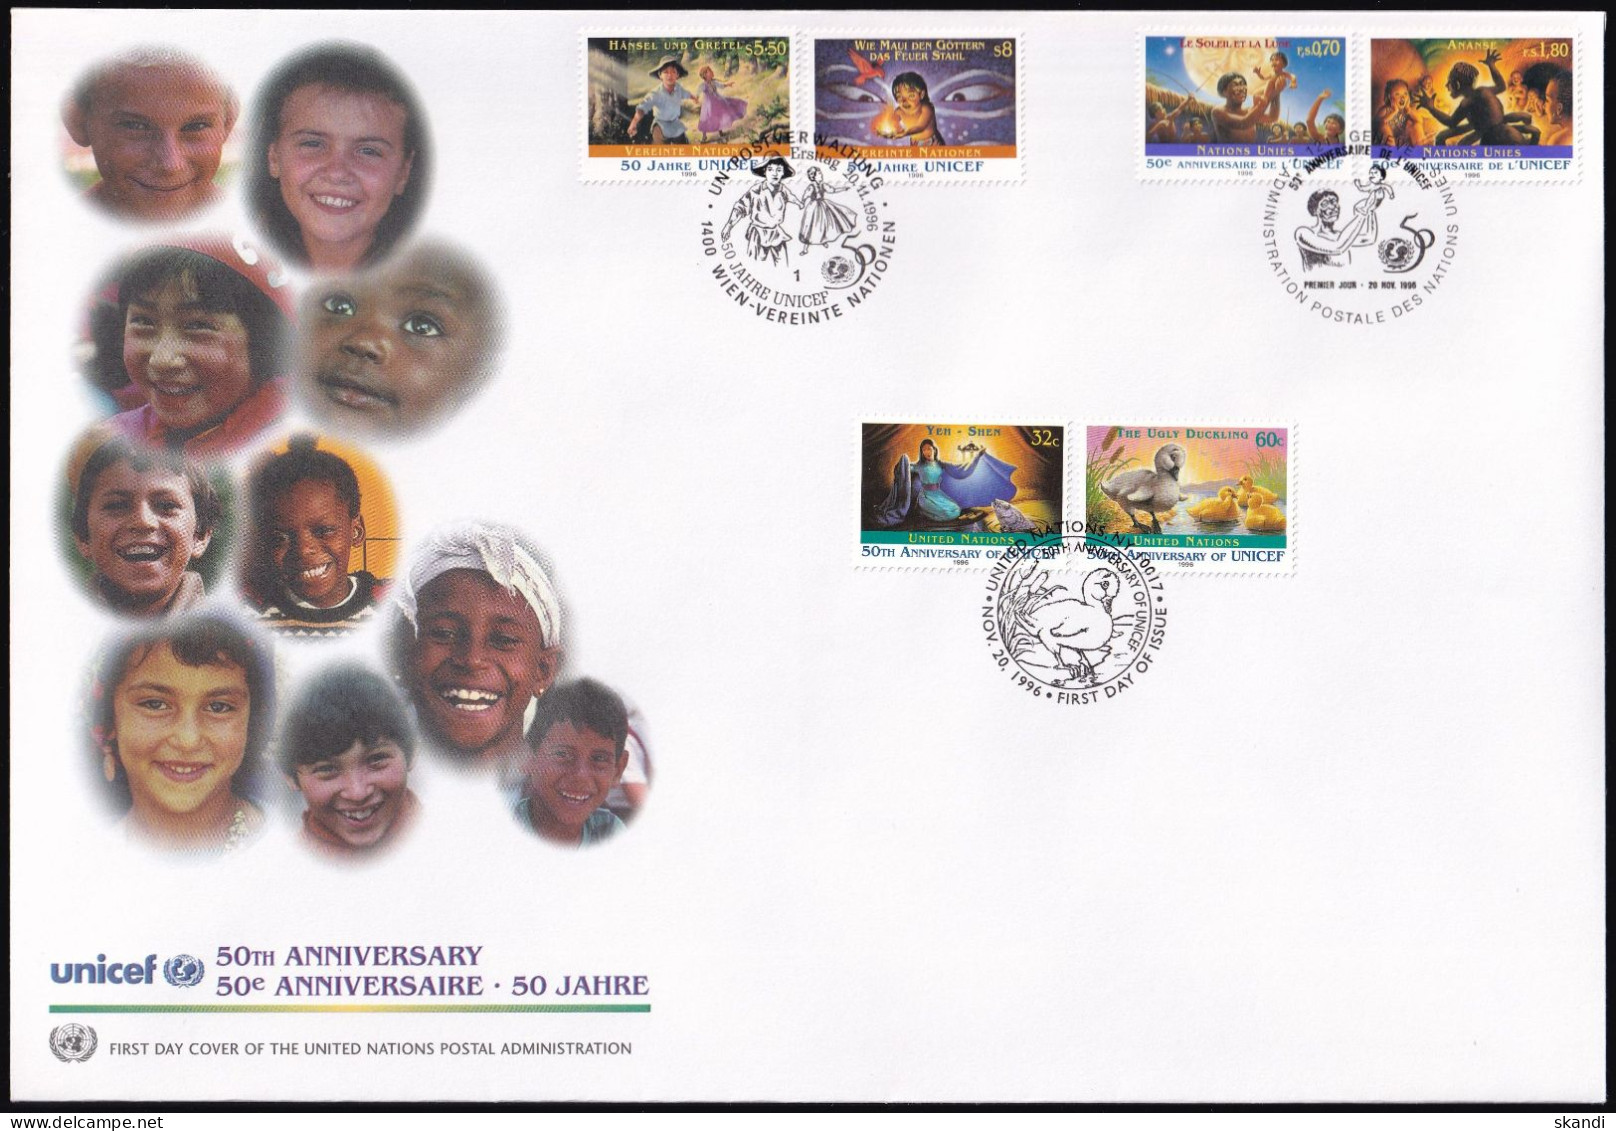 UNO NEW YORK - WIEN - GENF 1996 Mi-Nr. 32 TRIO-FDC 50 Jahre UNICEF - Gemeinschaftsausgaben New York/Genf/Wien